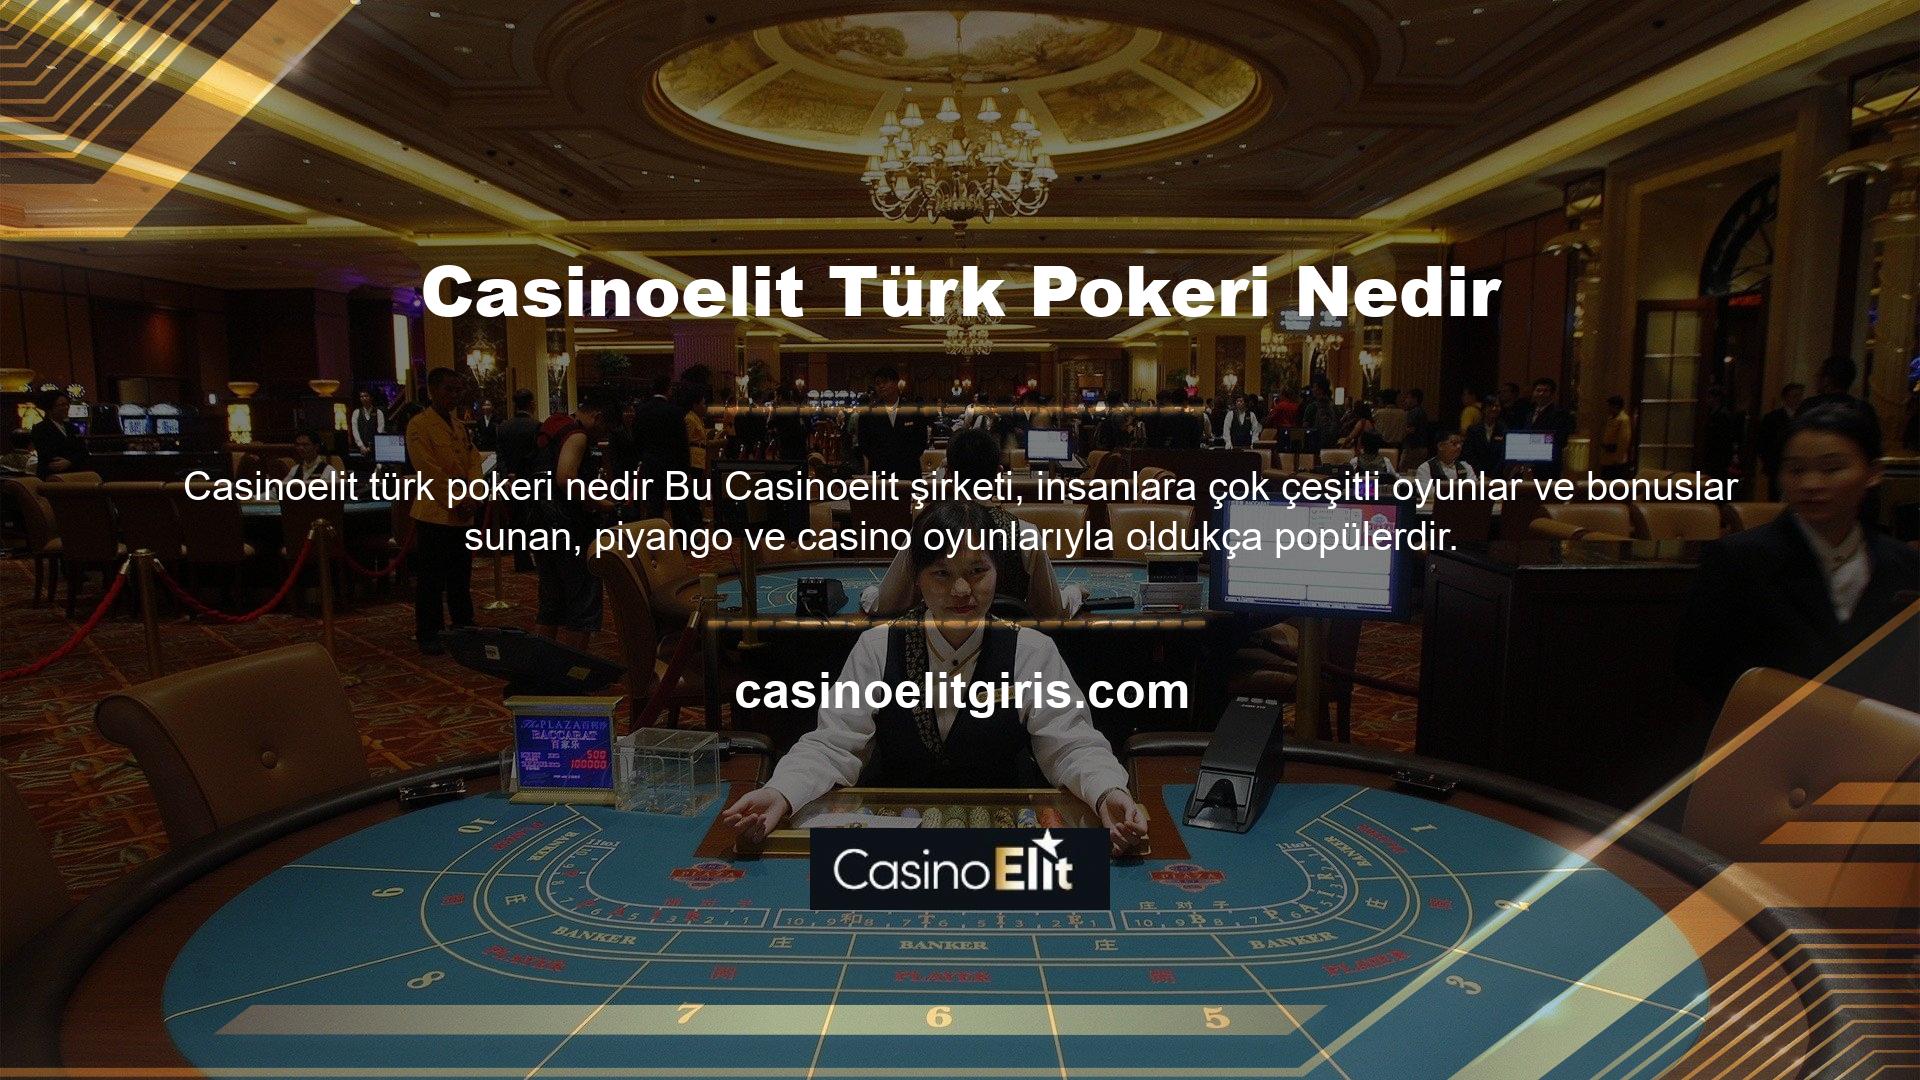 Sadece birçok kişi arasında popüler olmakla kalmıyor, aynı zamanda birçok kişi Casinoelit Türk Pokeri hakkında bilgi edinmek istiyor